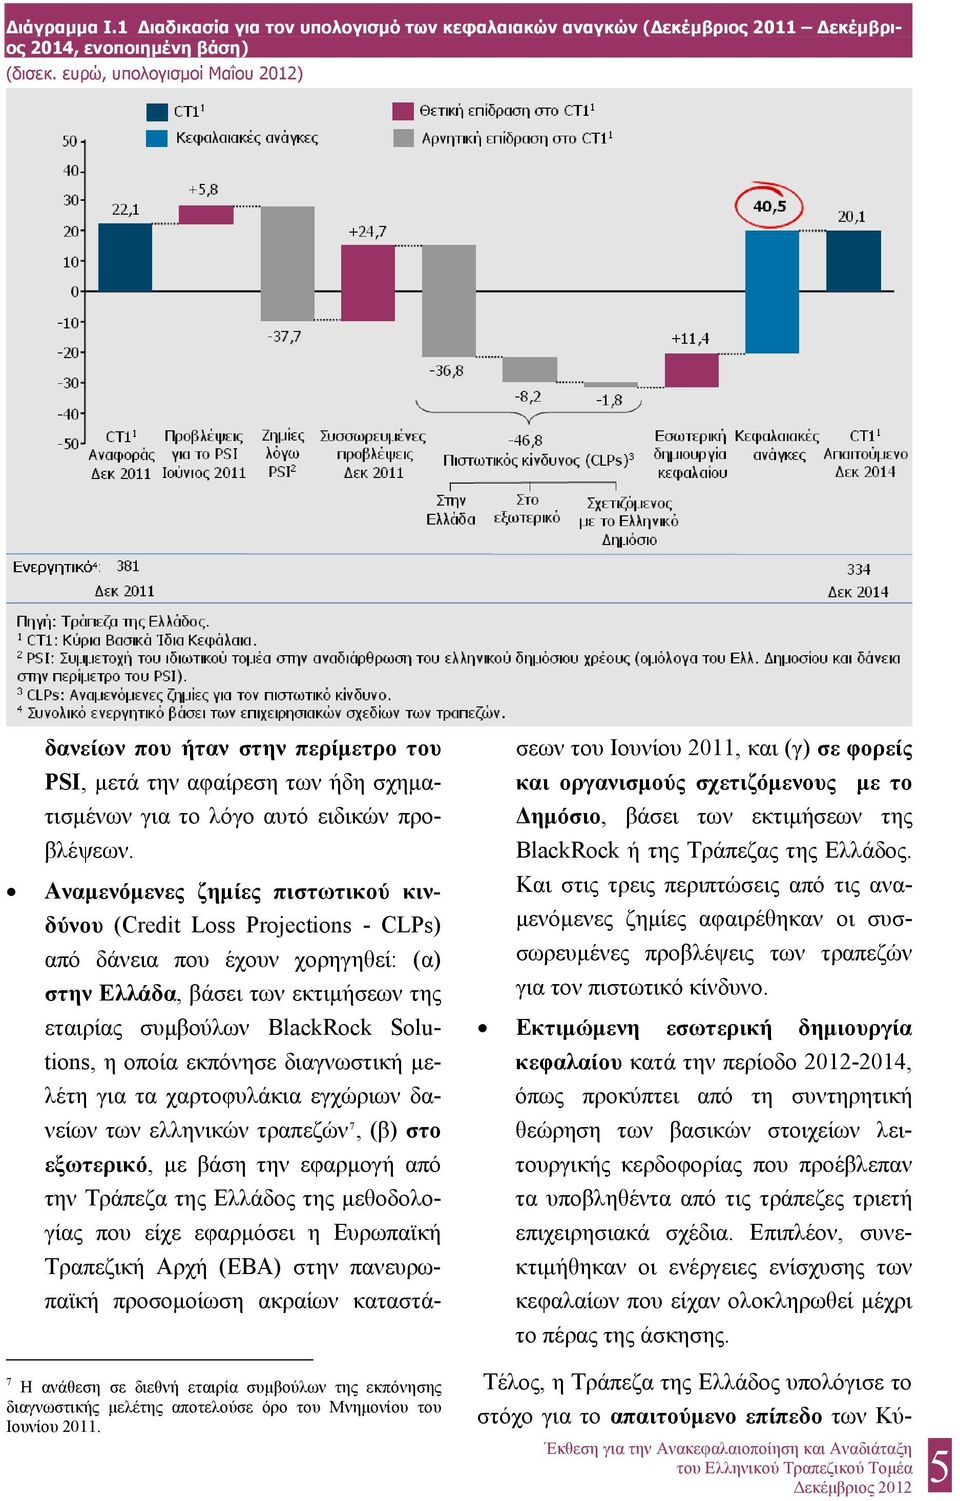 Αναμενόμενες ζημίες πιστωτικού κινδύνου (Credit Loss Projections - CLPs) από δάνεια που έχουν χορηγηθεί: (α) στην Ελλάδα, βάσει των εκτιμήσεων της εταιρίας συμβούλων BlackRock Solutions, η οποία